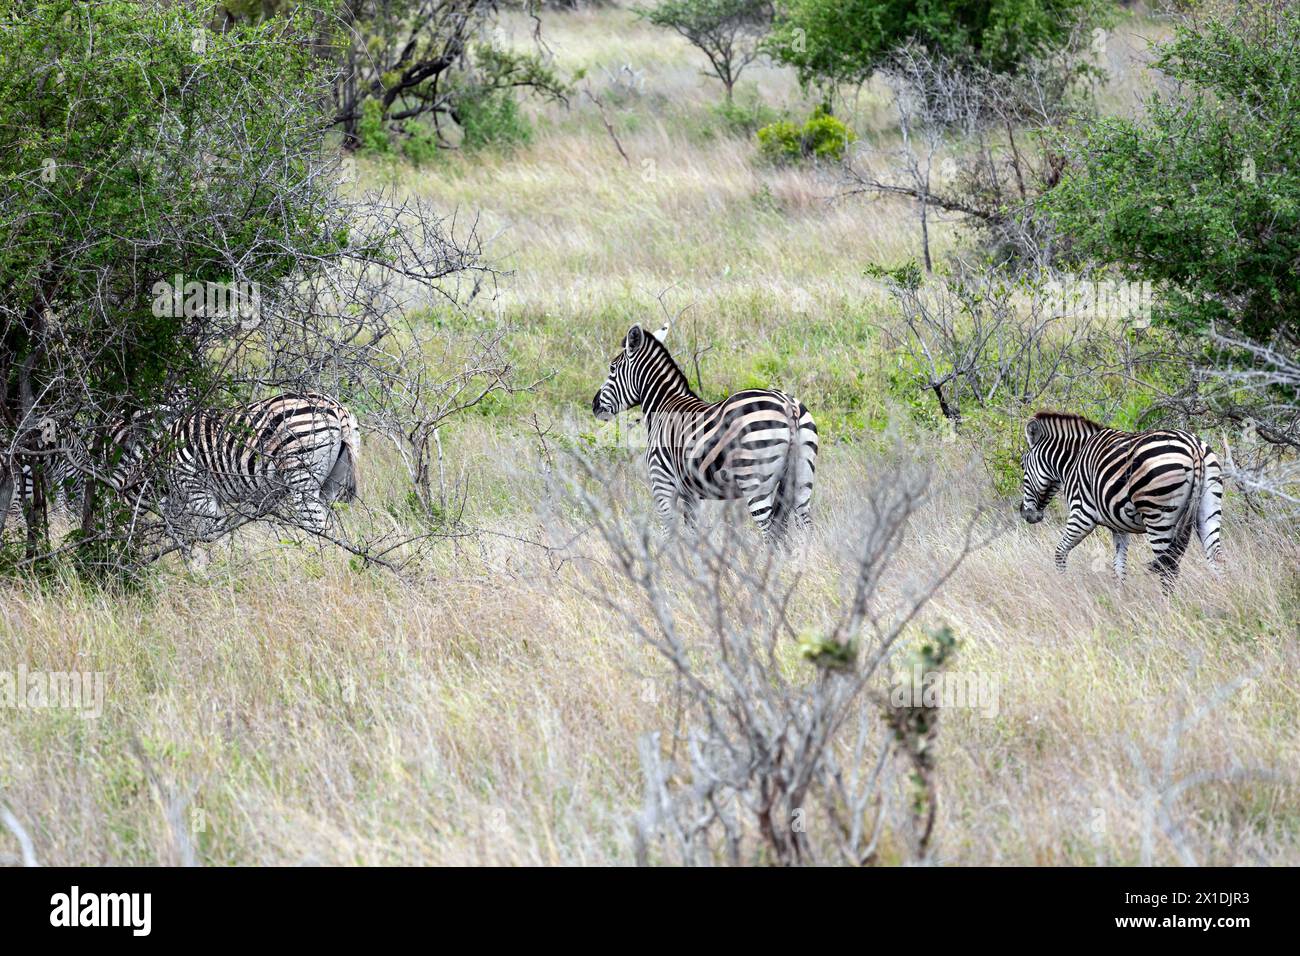 Trois zèbres africains marchent parmi les arbres verts et les buissons dans la savane. Safari dans le parc national Kruger, Afrique du Sud. Animaux de la faune fond, sauvage n Banque D'Images